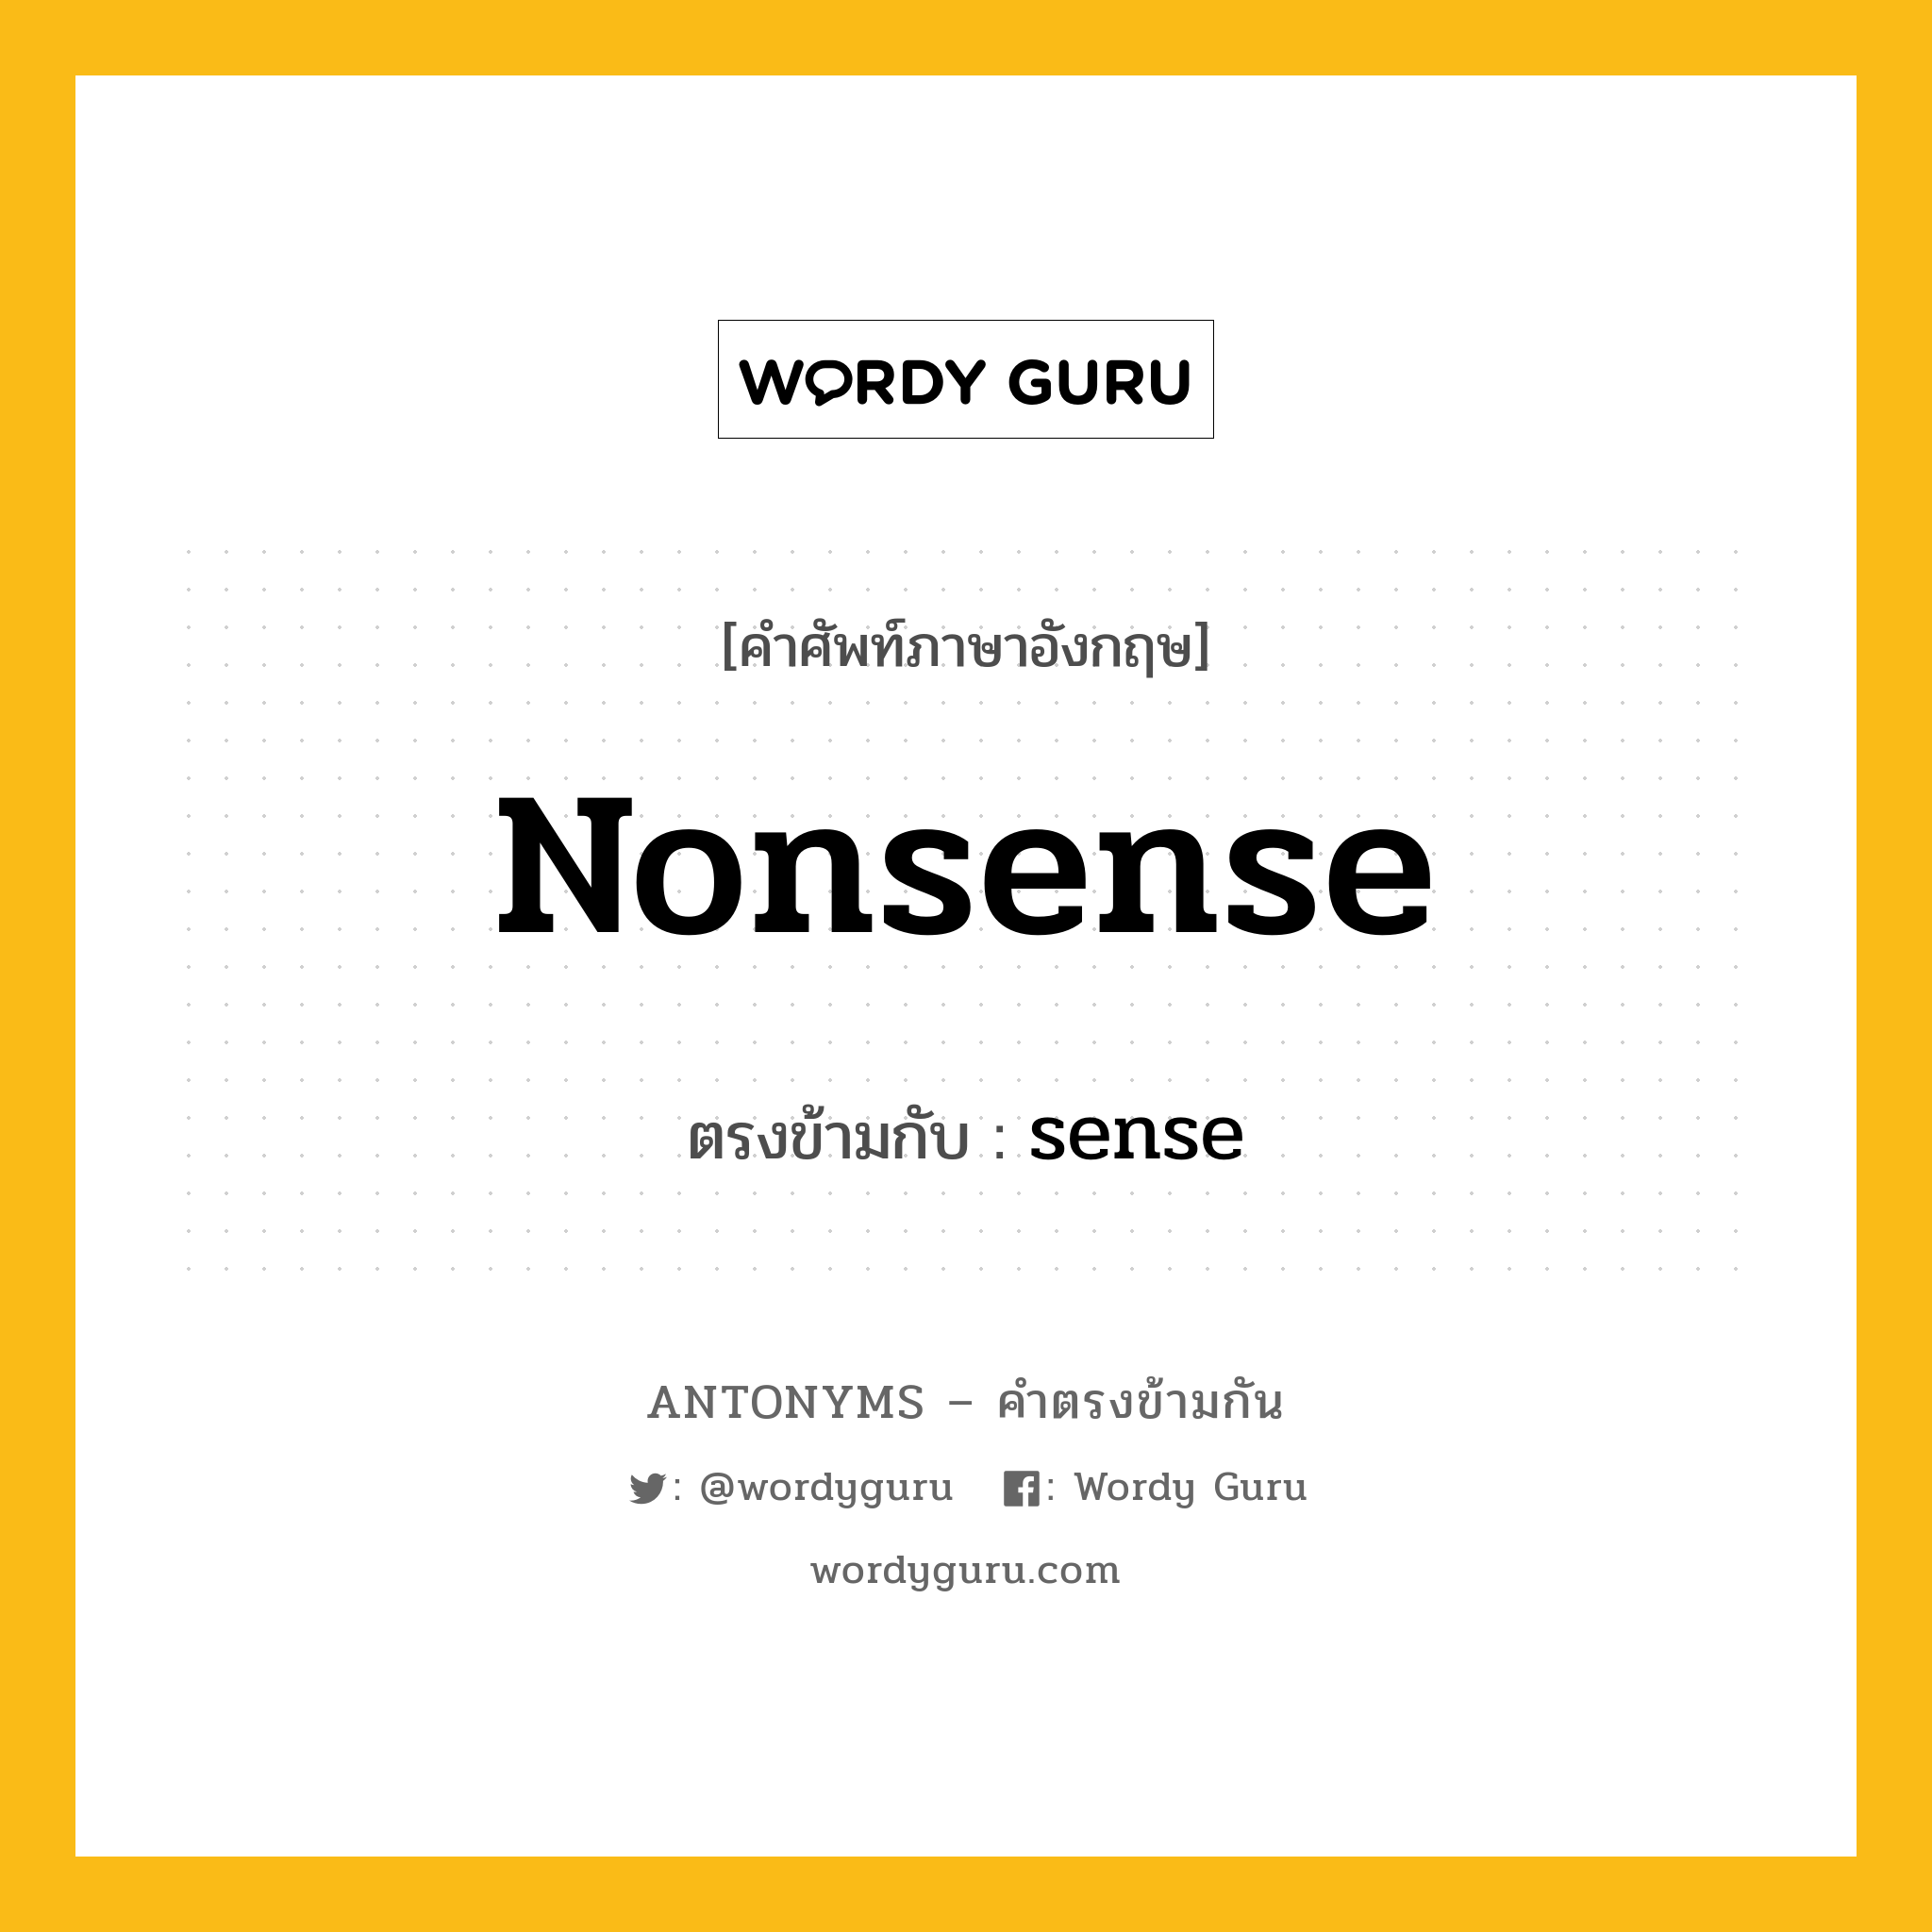 nonsense เป็นคำตรงข้ามกับคำไหนบ้าง?, คำศัพท์ภาษาอังกฤษ nonsense ตรงข้ามกับ sense หมวด sense